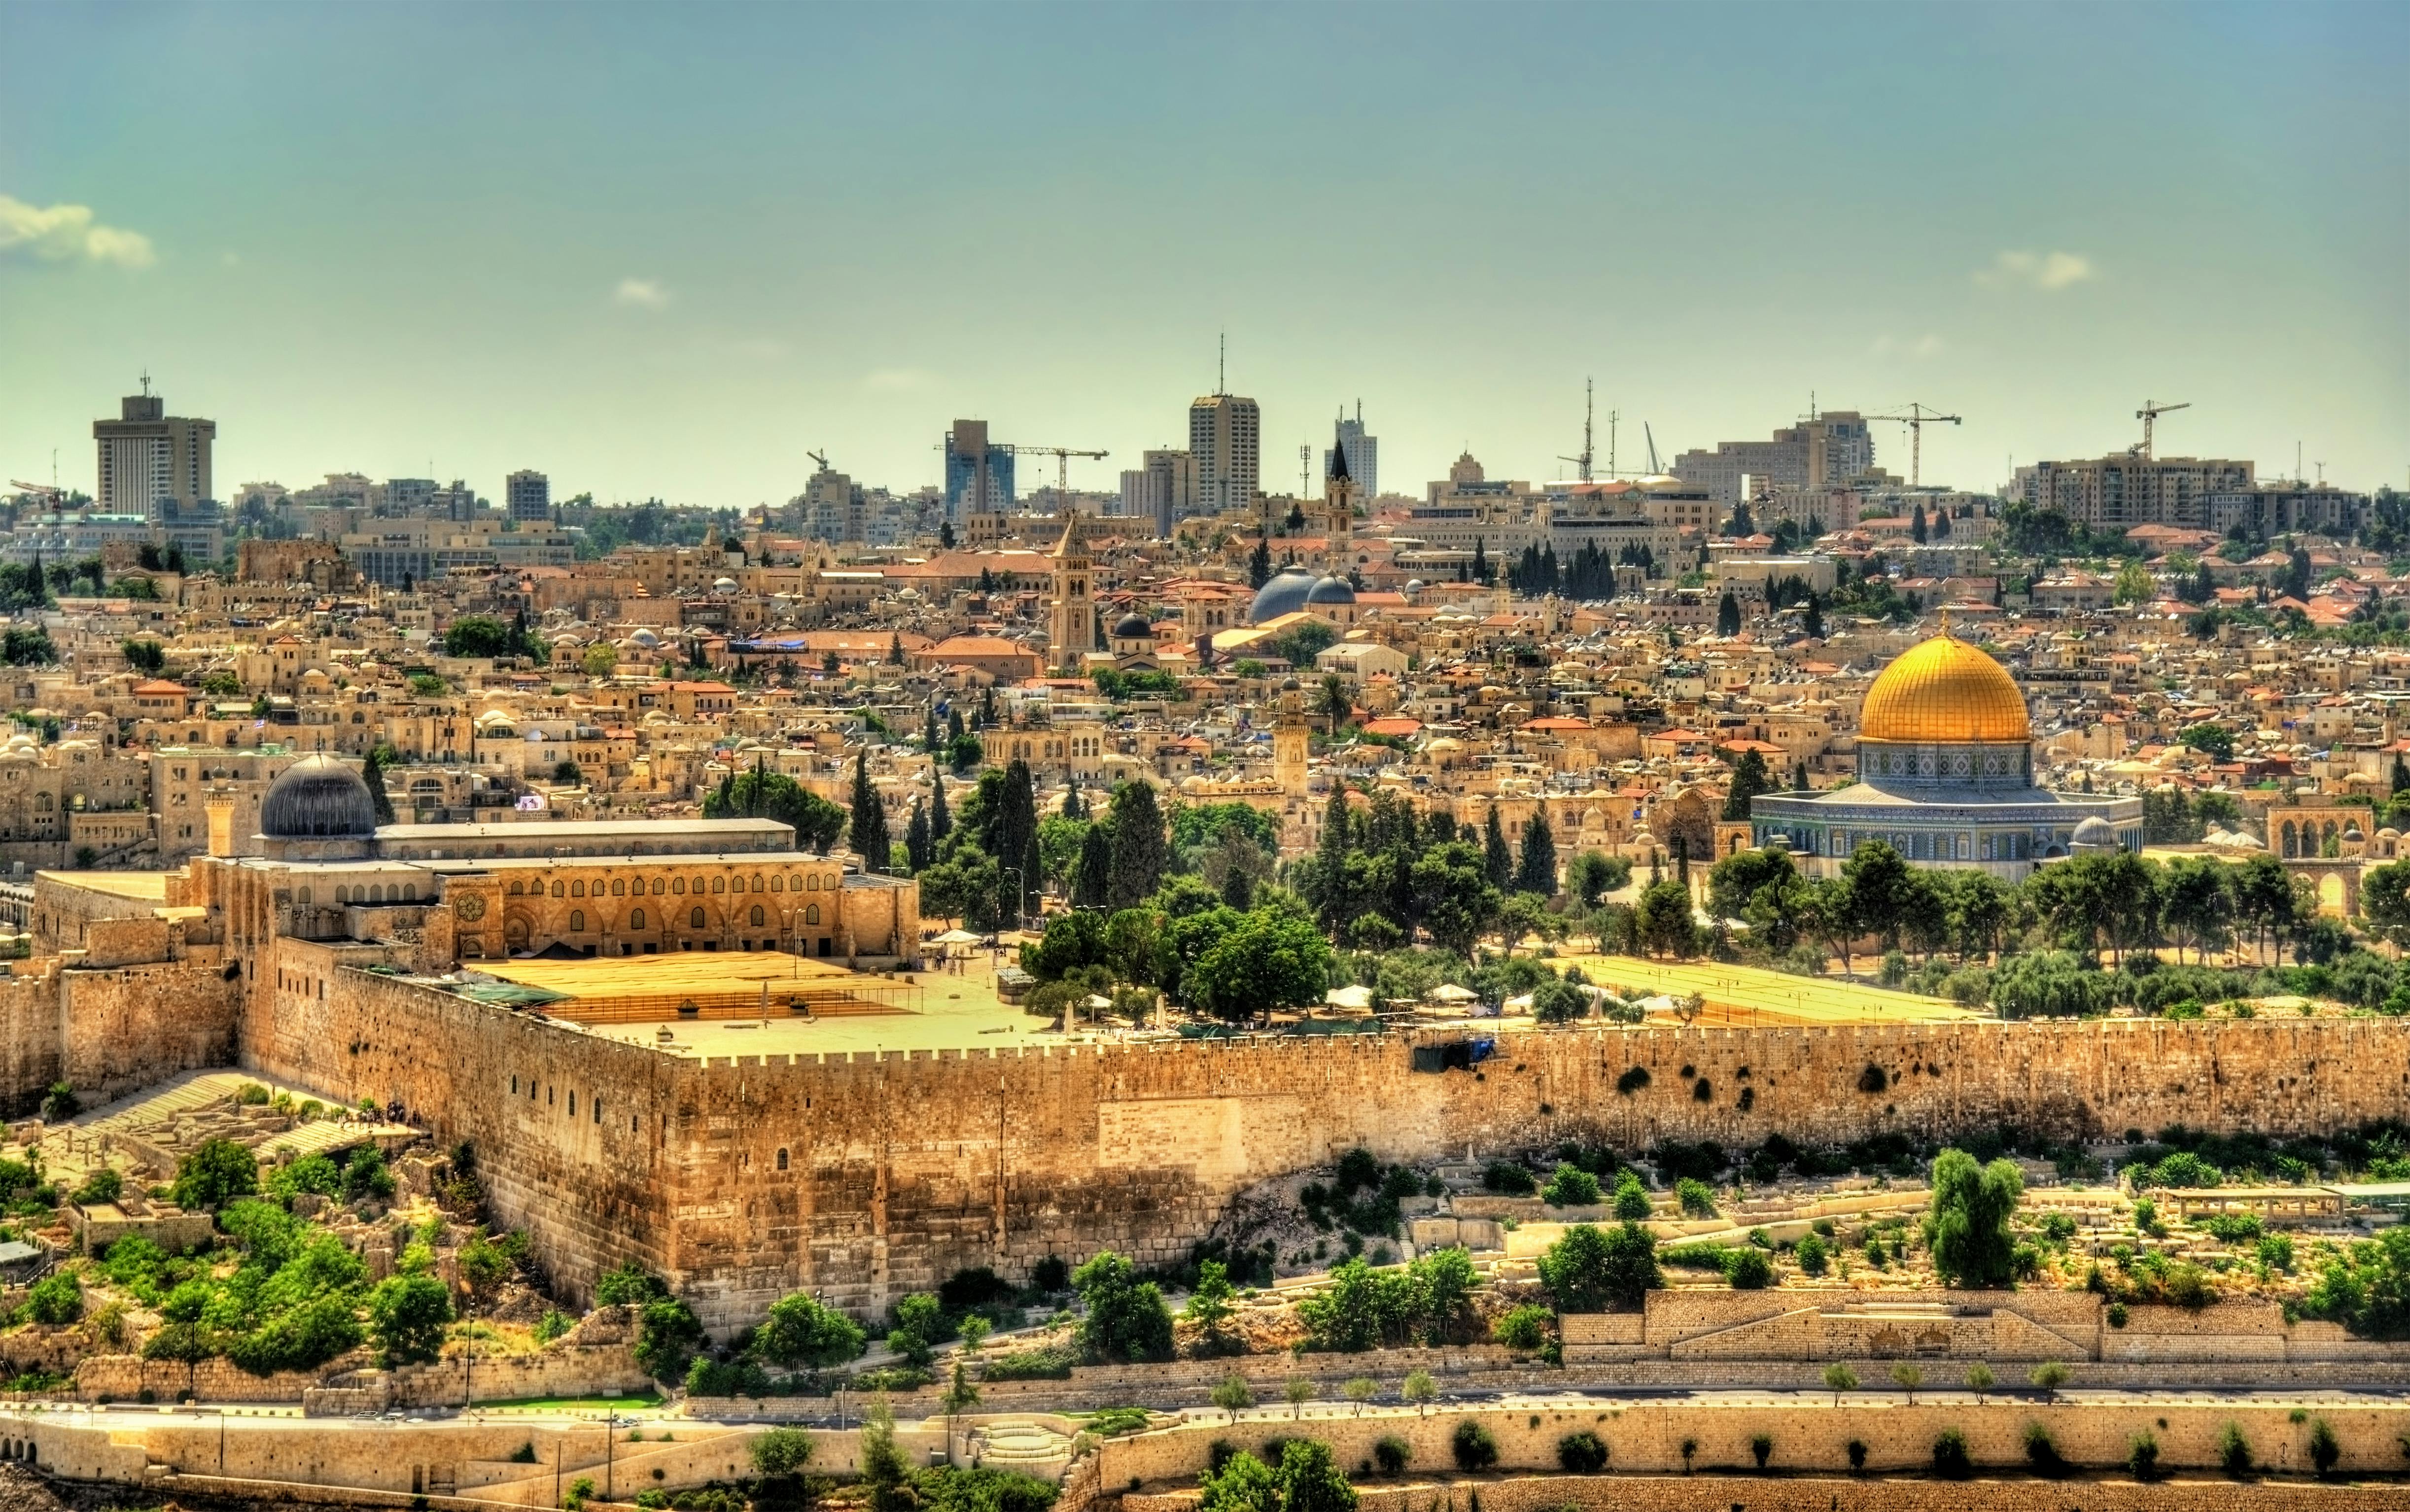 Jerusalem tour in the footsteps of Jesus from Jerusalem